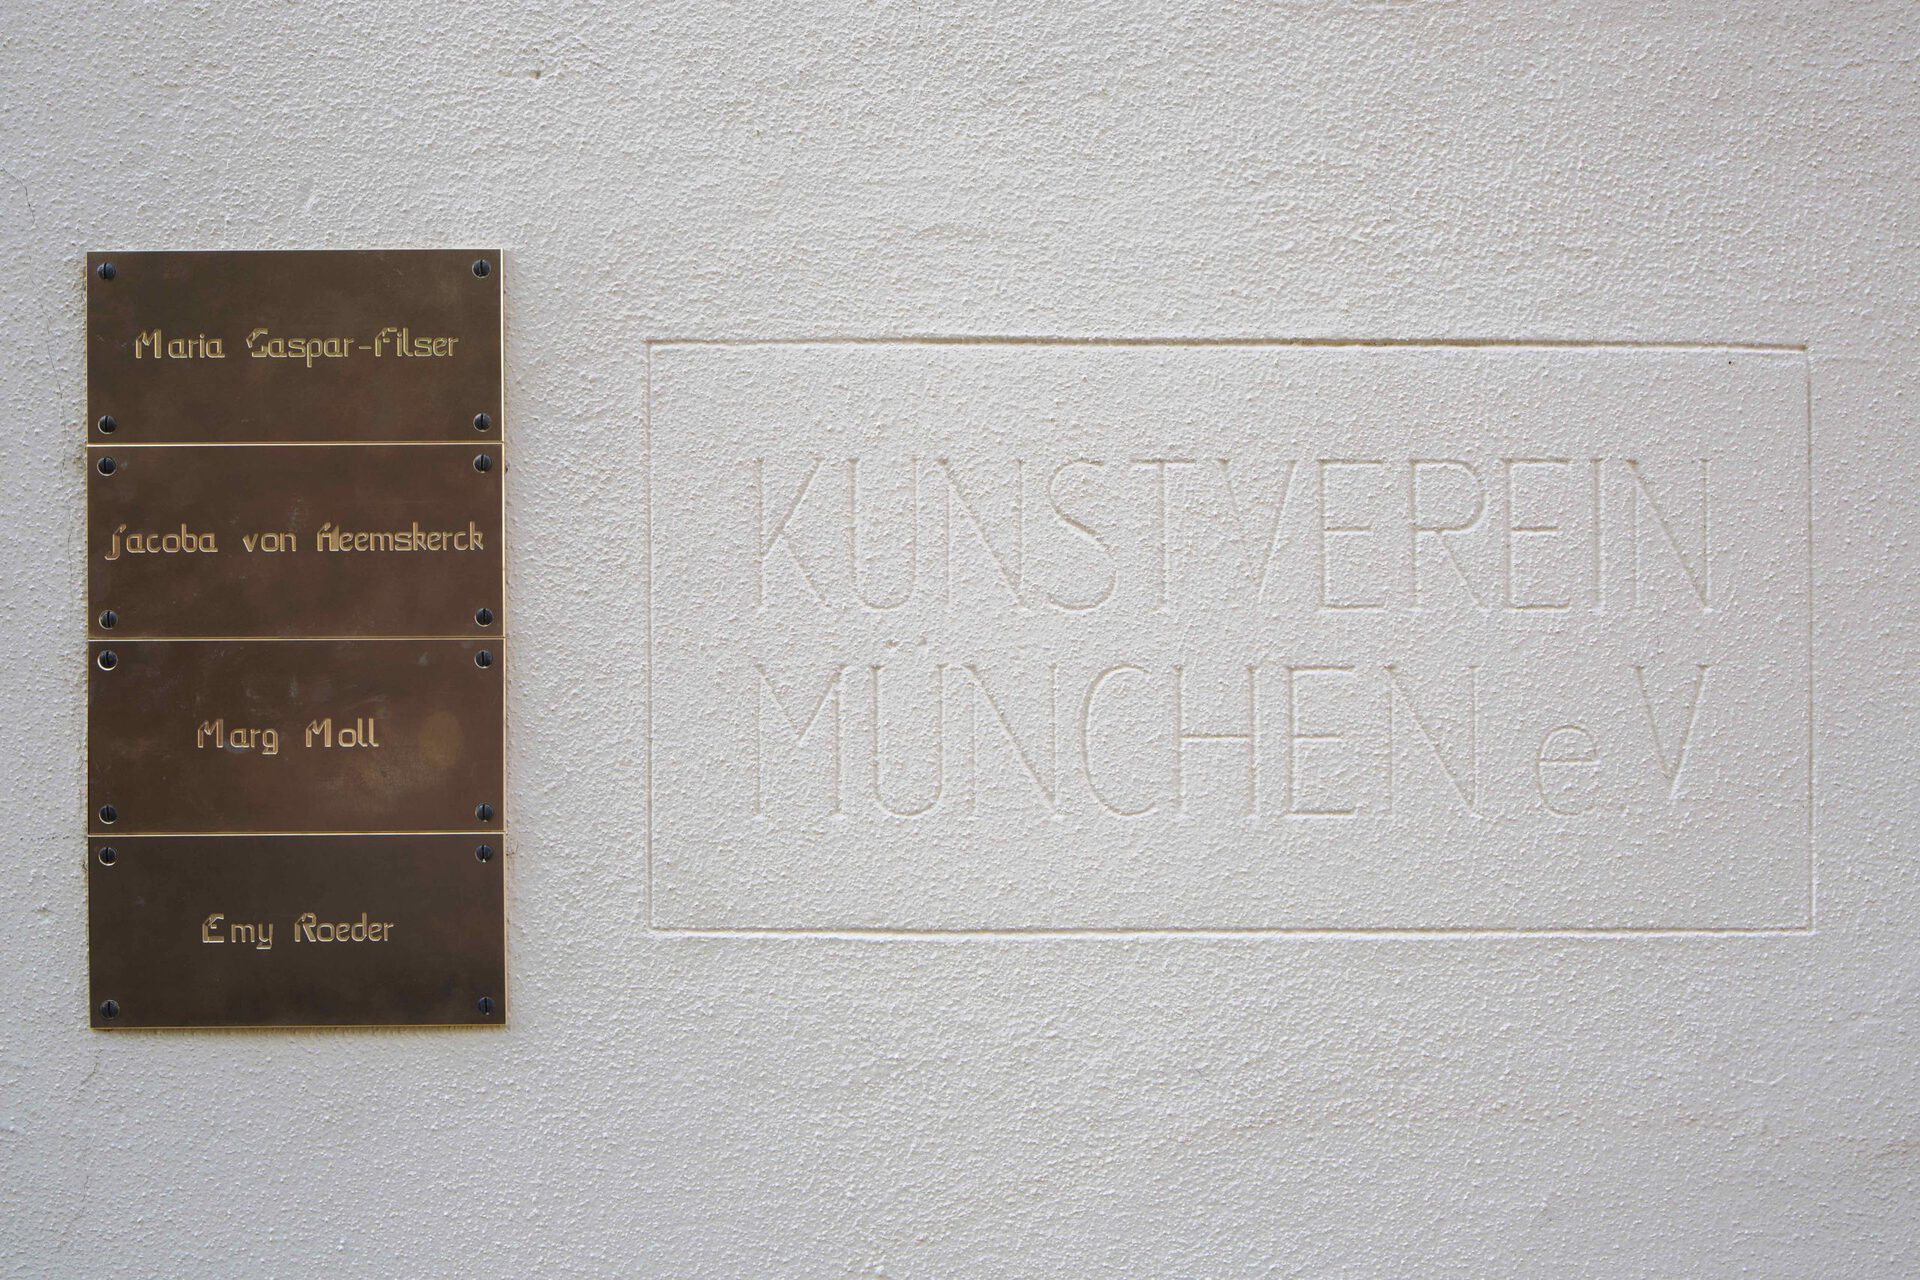 Installation view: Bea Schlingelhoff, "Vier Künstlerinnen der „Entarteten Kunst“ Ausstellung in München," 2021. Courtesy the artist and Kunstverein München e.V.; photo: Constanza Meléndez